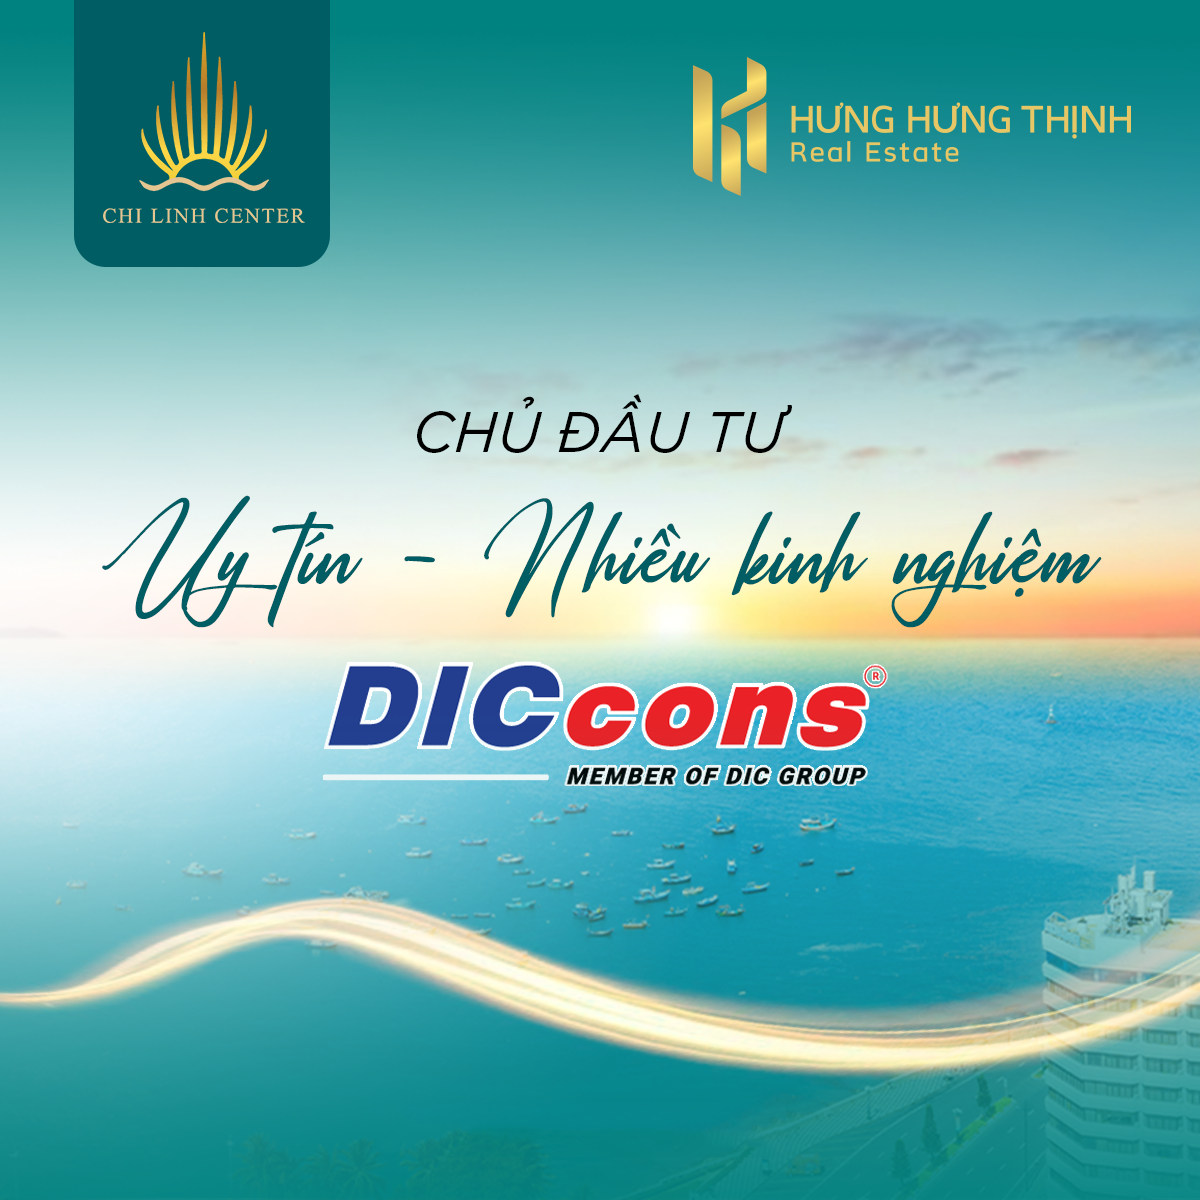 Diccons, chủ đầu tư Chí Linh Center